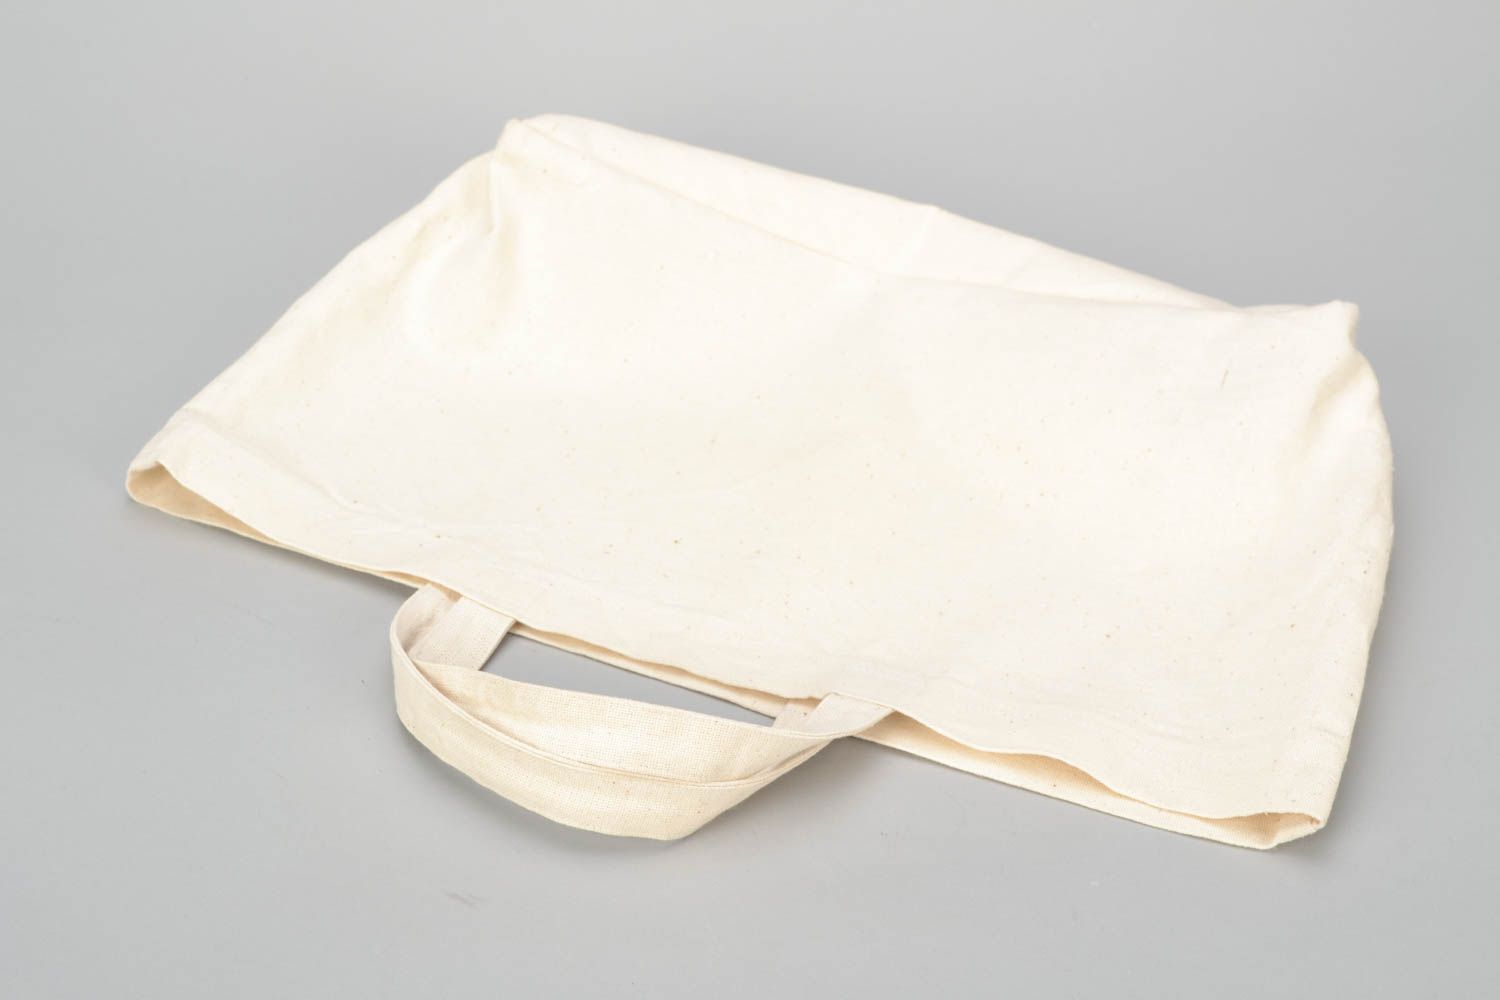 Textil Handtasche in Weiß foto 5